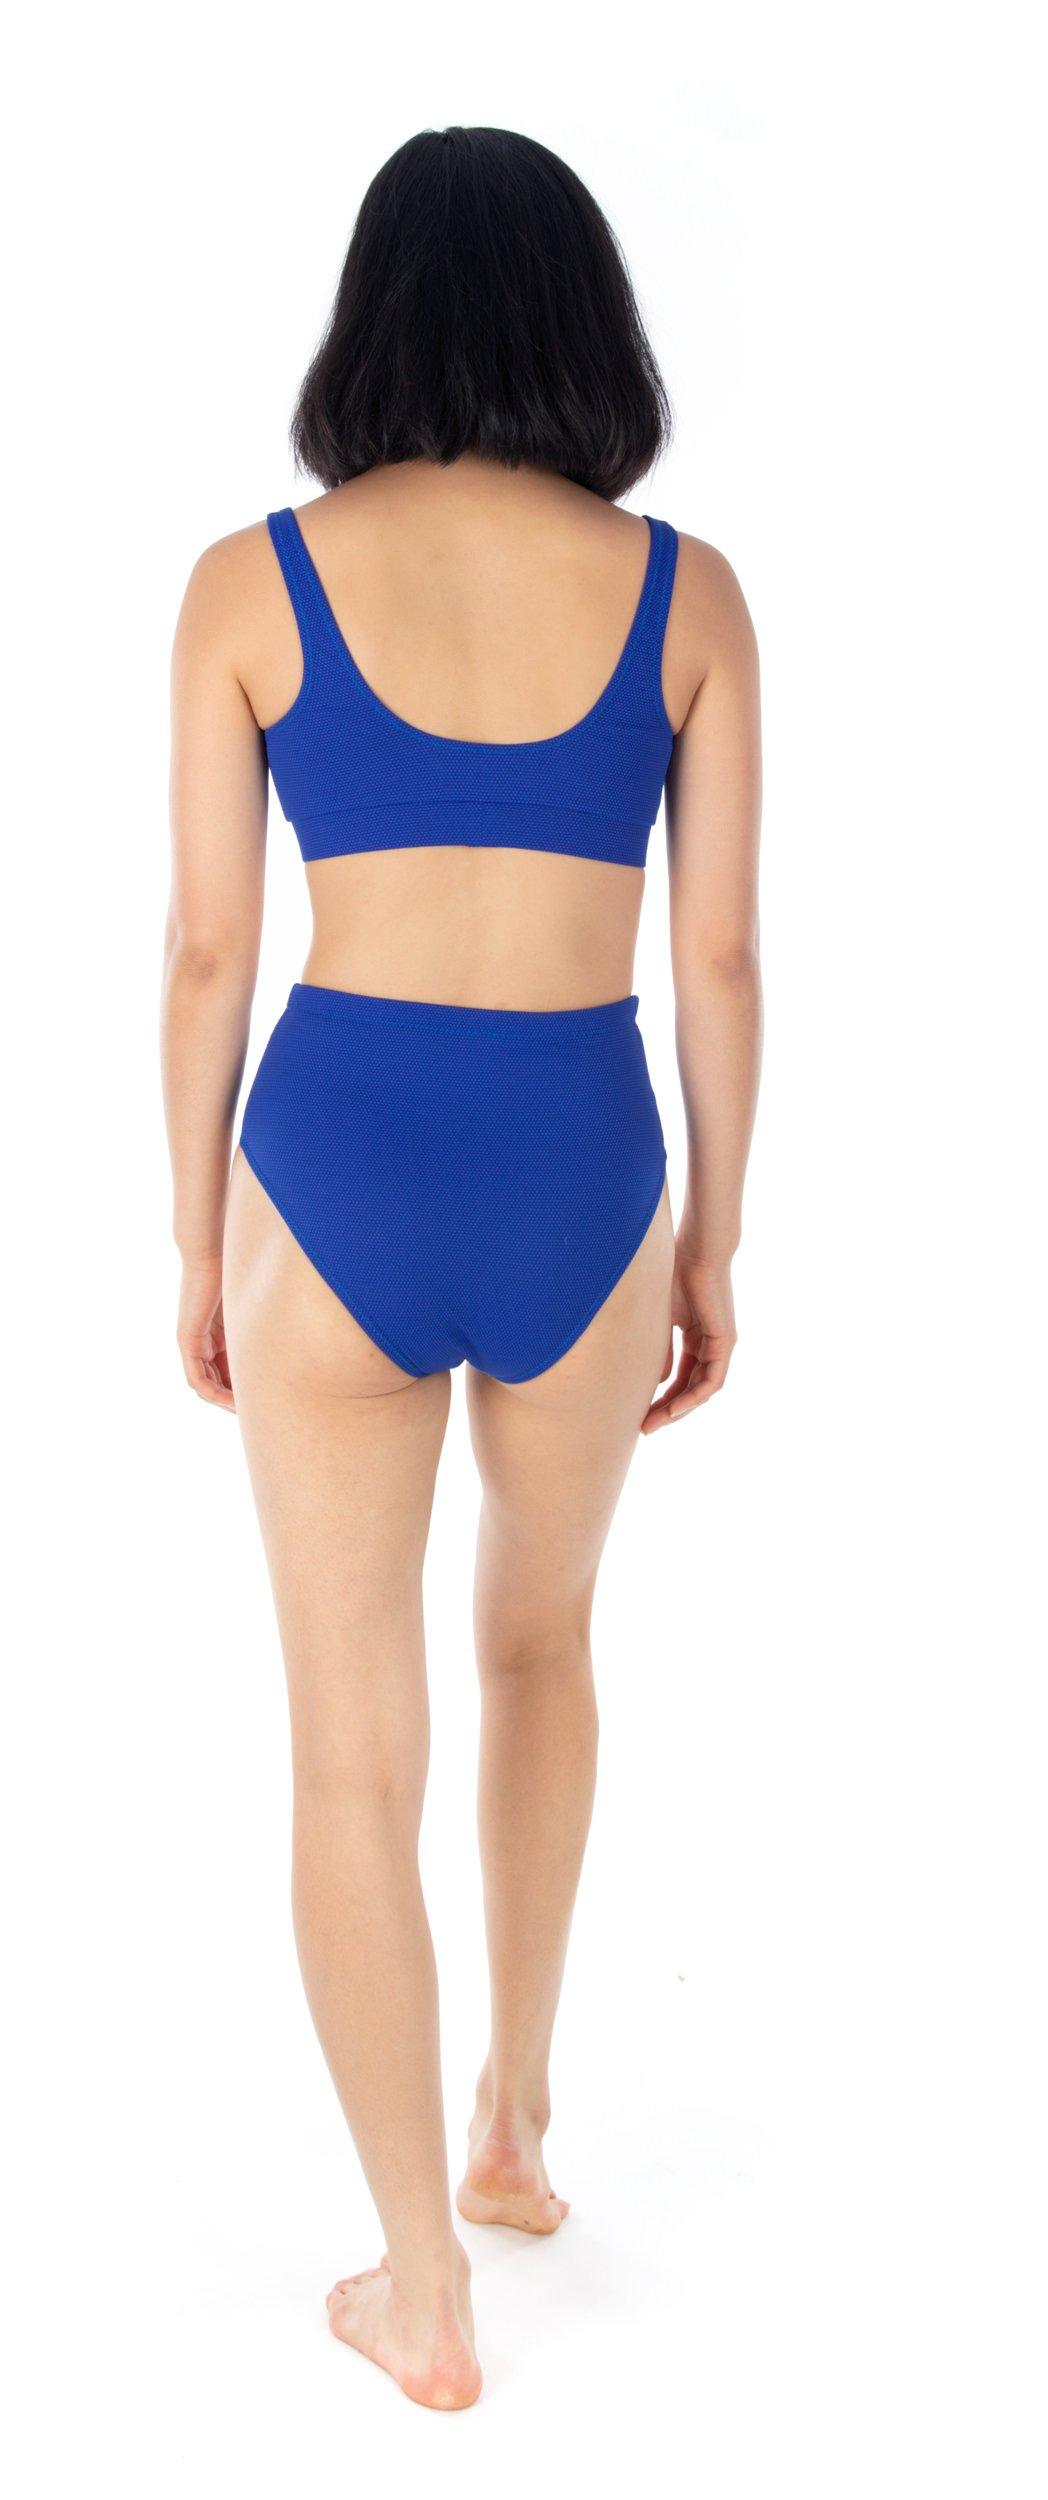 Use textured swimwear fabric with the Claudia bikini pattern to elevate your swimwear look